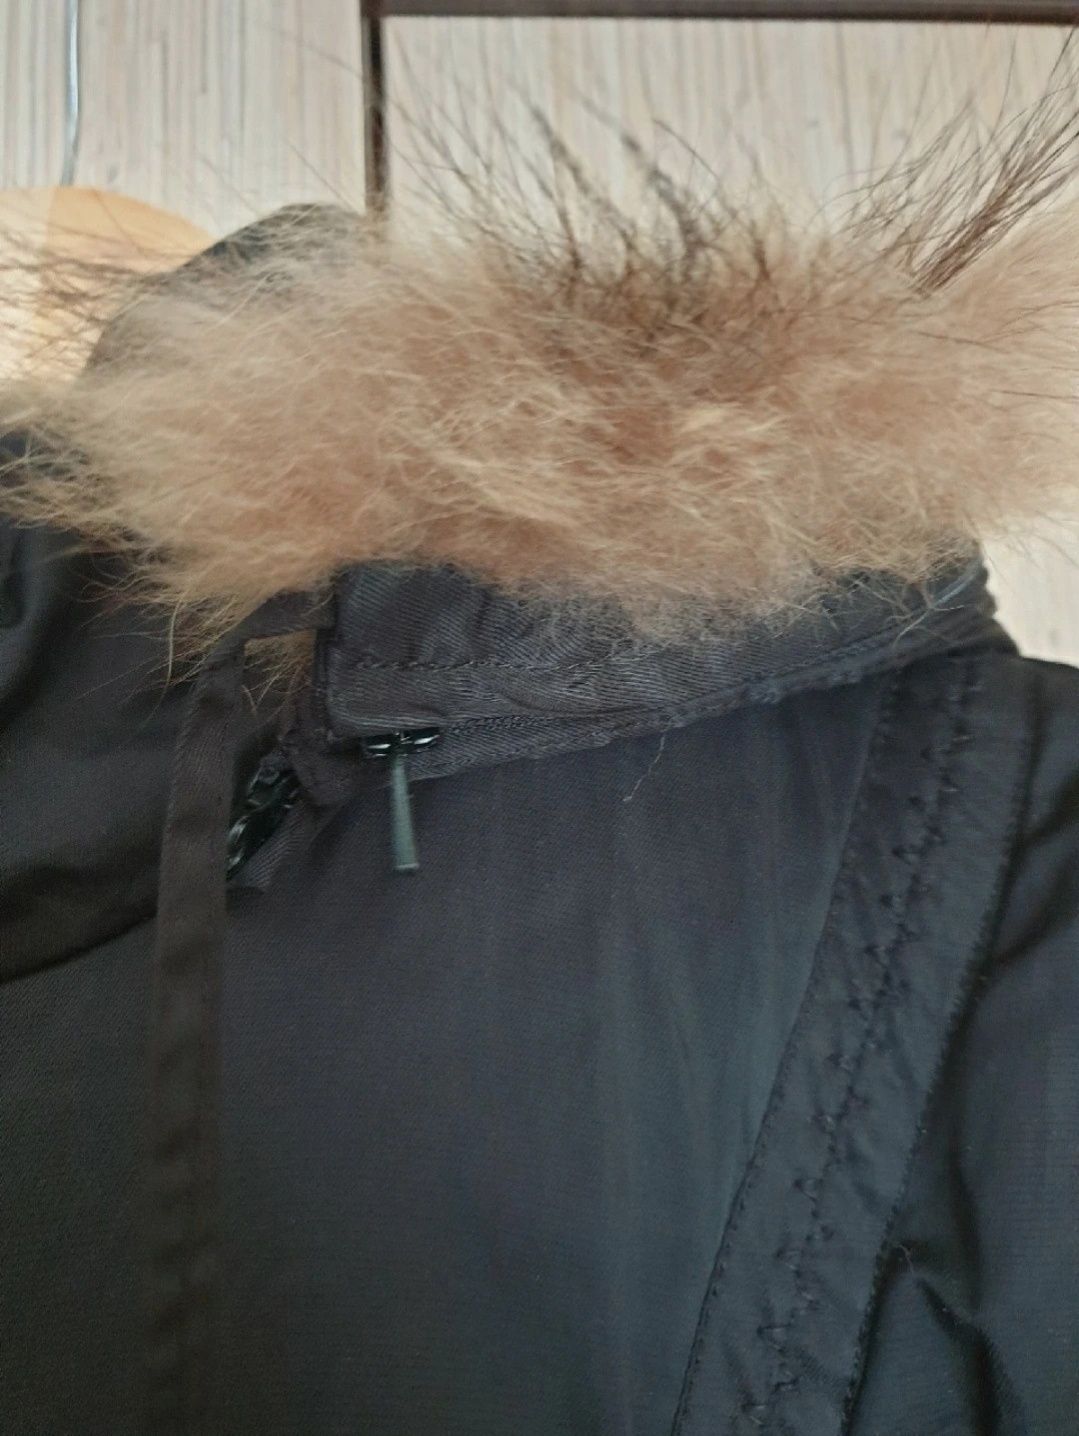 Kurtka zimowa płaszcz czarny parka r. 42 XL (przesyłka duża)